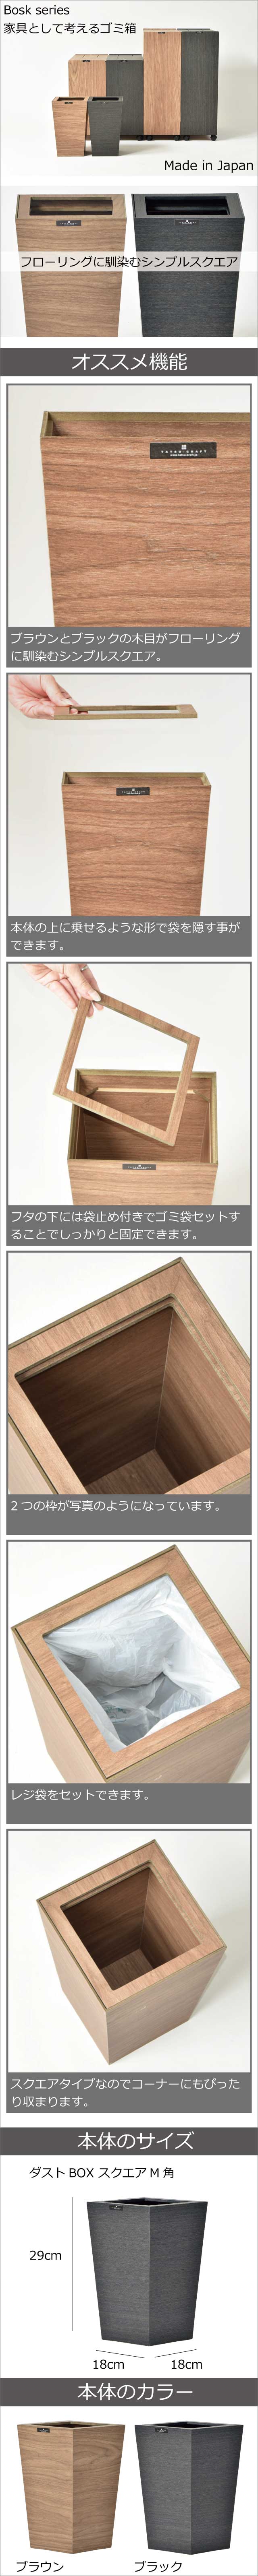 日本製 橋本達之助工芸 バスク ダストBOX スクエア M角 2個セット ゴミ箱 ごみ箱 ダストボックス おしゃれ モノギャラリー